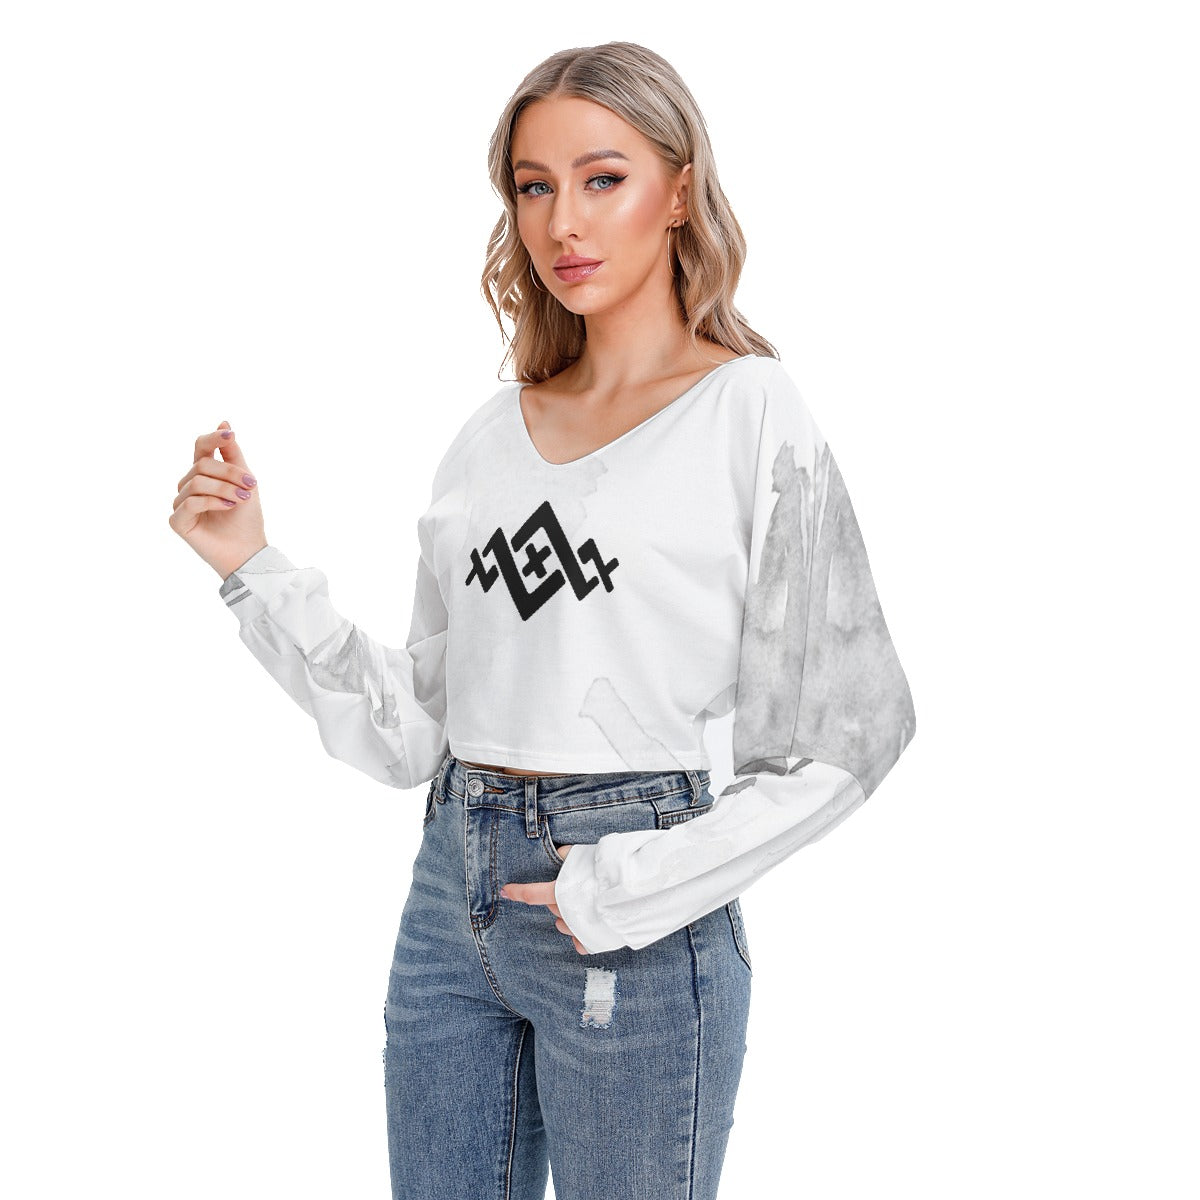 Women's All Over Print Drop Shoulder Sweatshirt